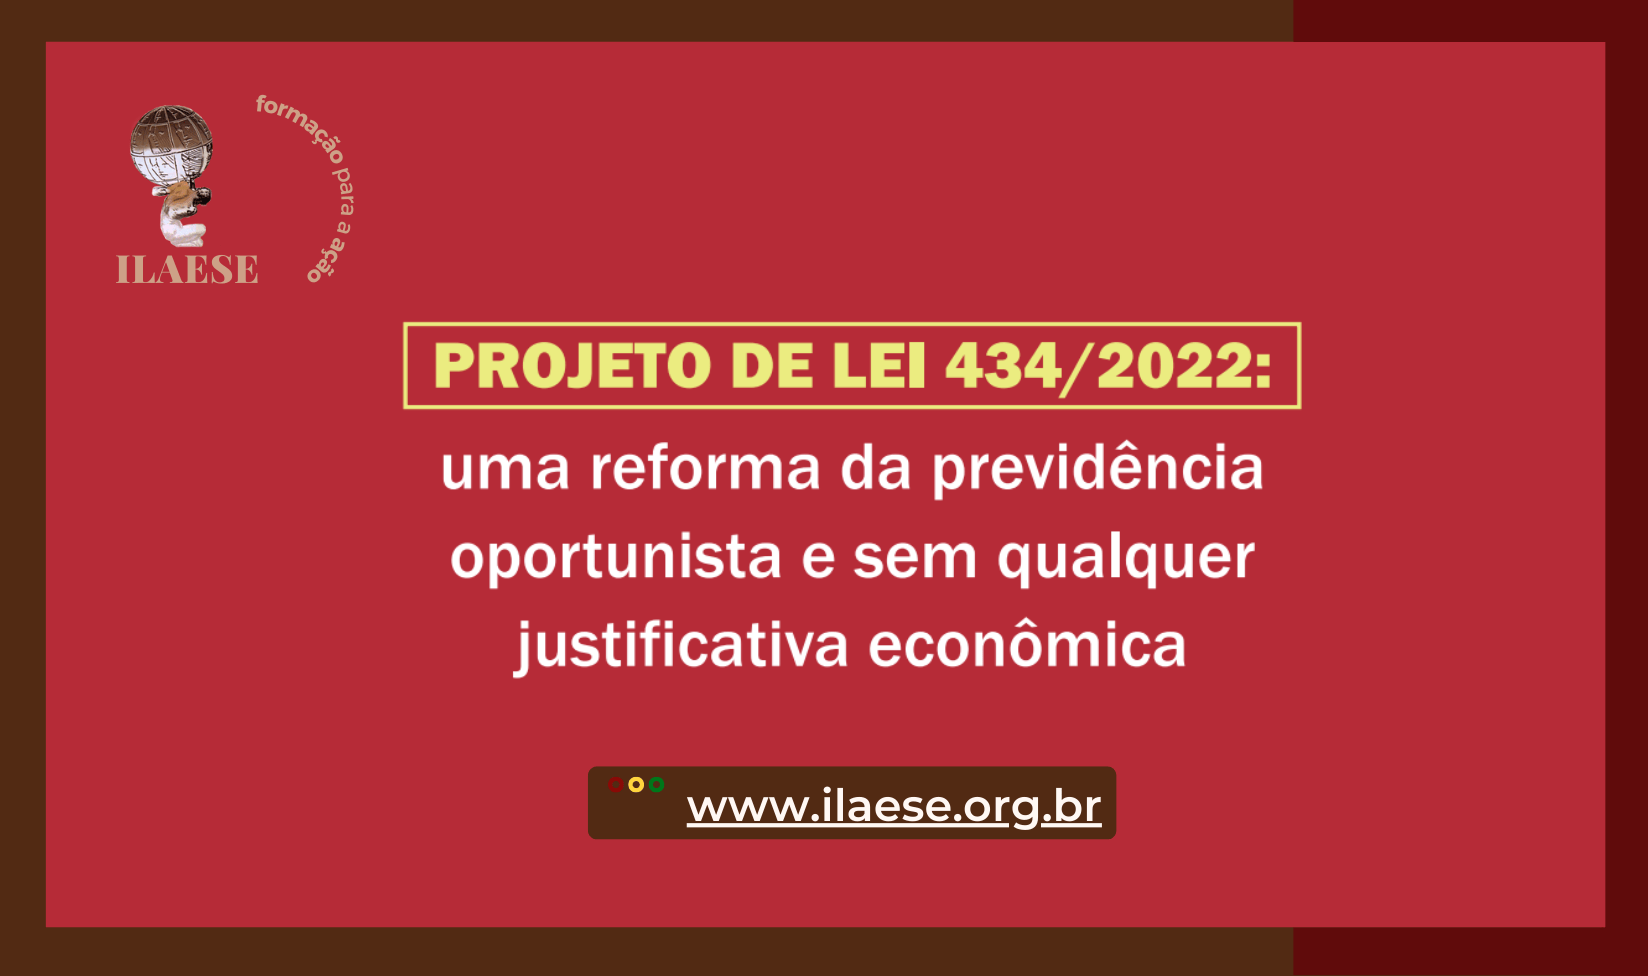 PROJETO DE LEI 434/2022: uma reforma da previdência oportunista e sem qualquer justificativa econômica